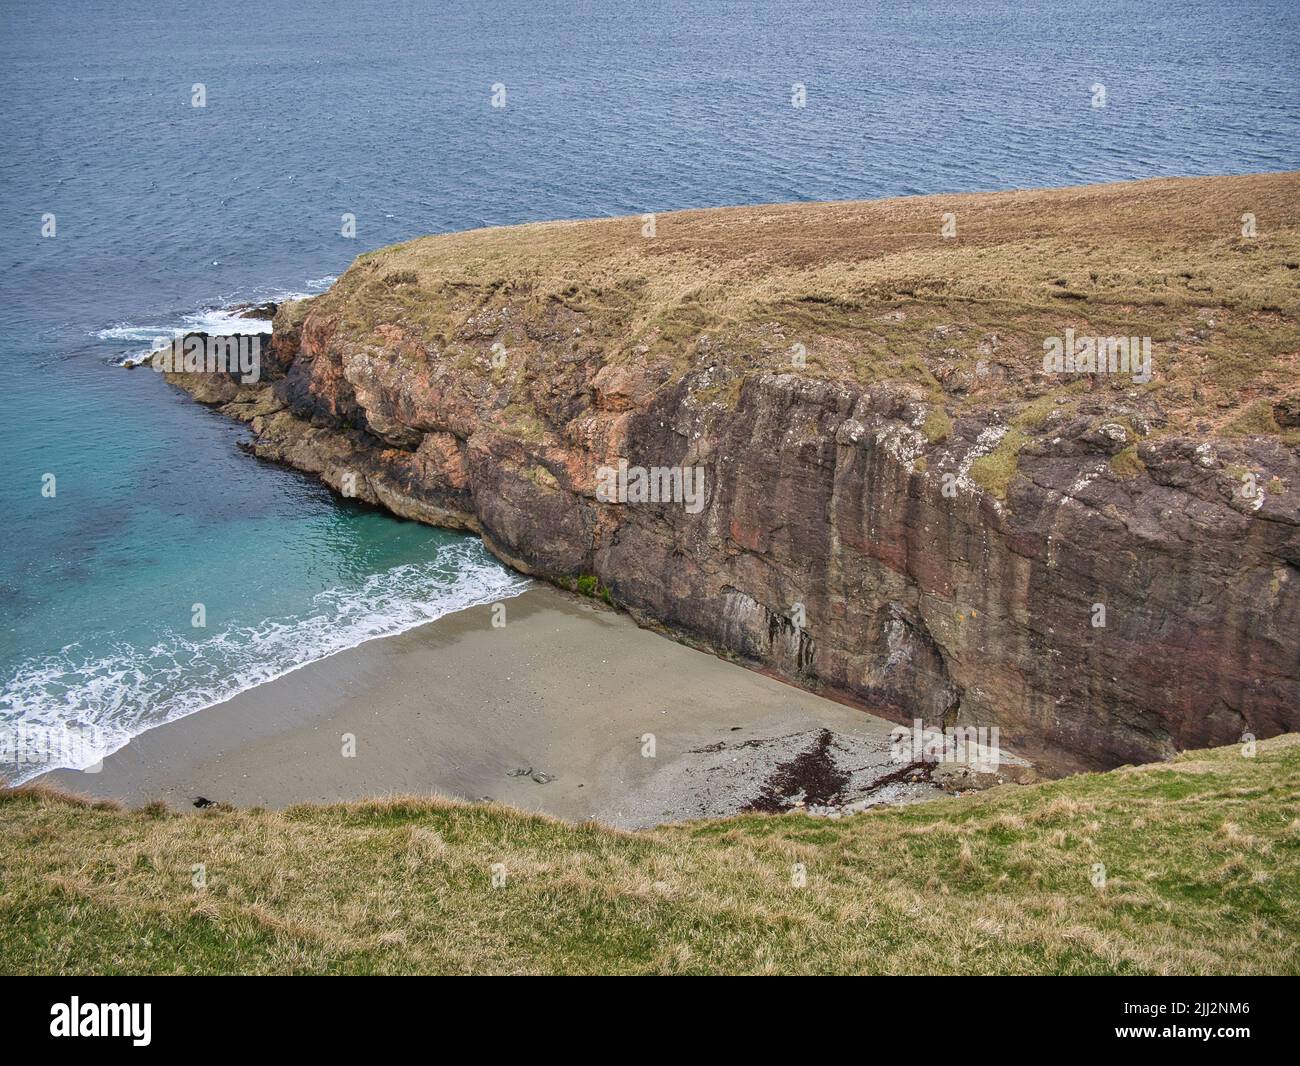 The Walls Boundary Fault, cerca de Ollaberry, Shetland, Reino Unido, forma parte de la falla de ataque de Great Glen que atraviesa el norte del Reino Unido. Foto de stock